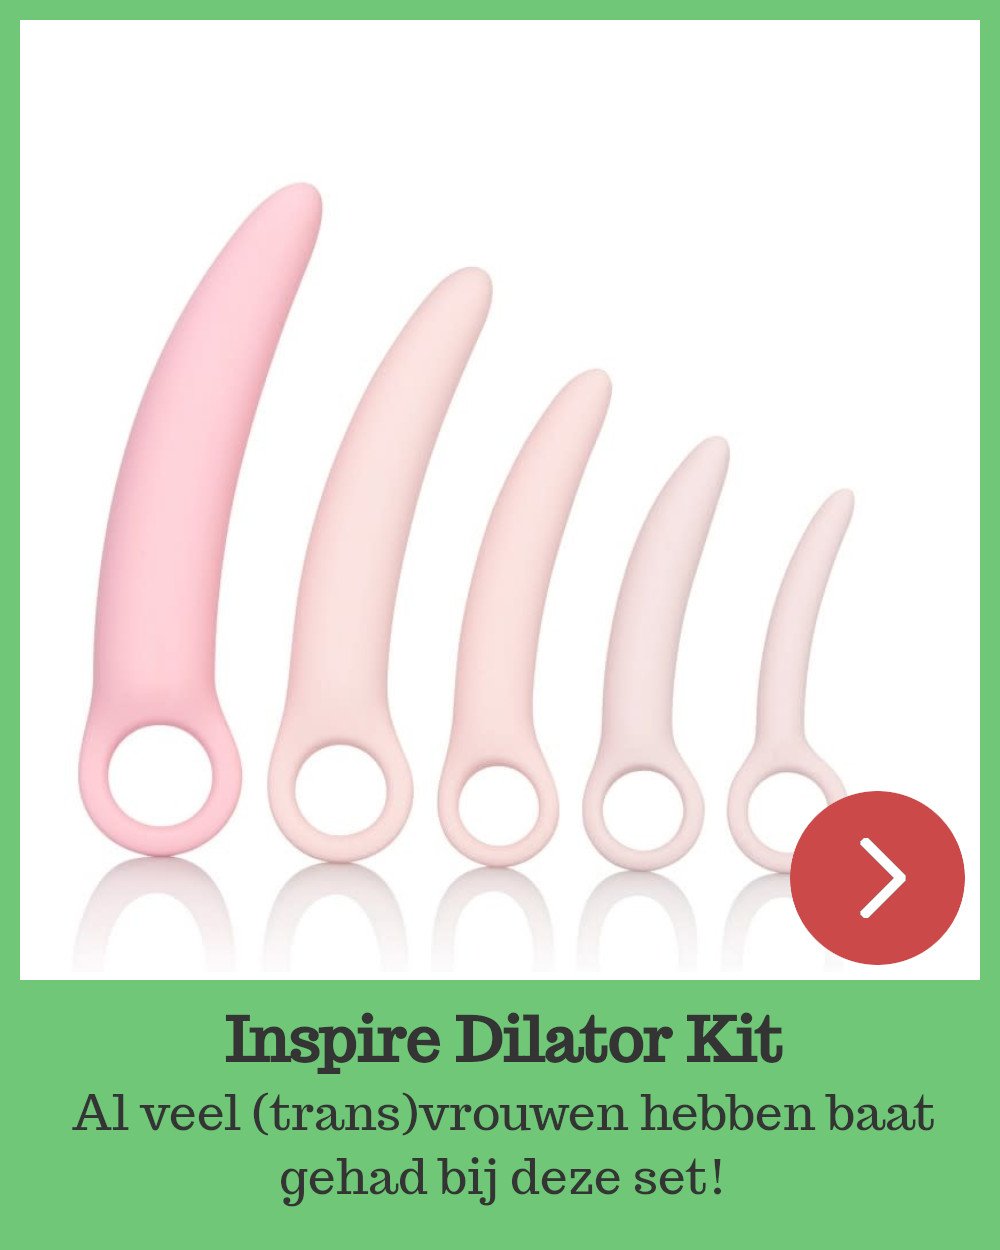 Inspire Dilator Kit, een uitkomst voor veel (trans)vrouwen